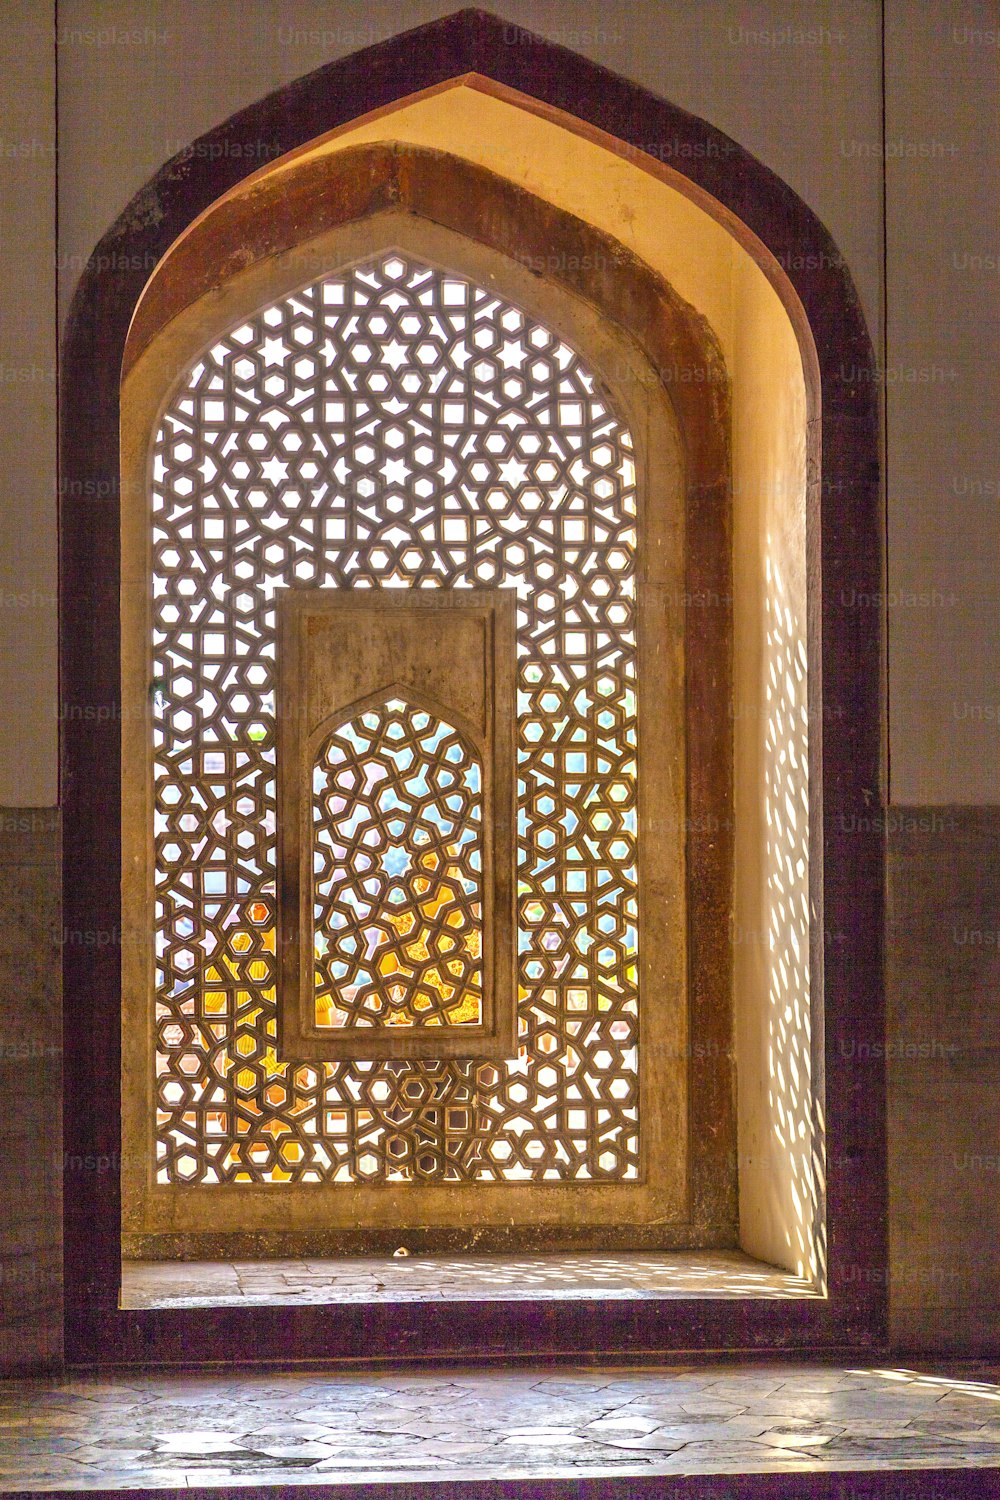 Hermosas ventanas con adornos de estilo islámico en la tumba de Humayun